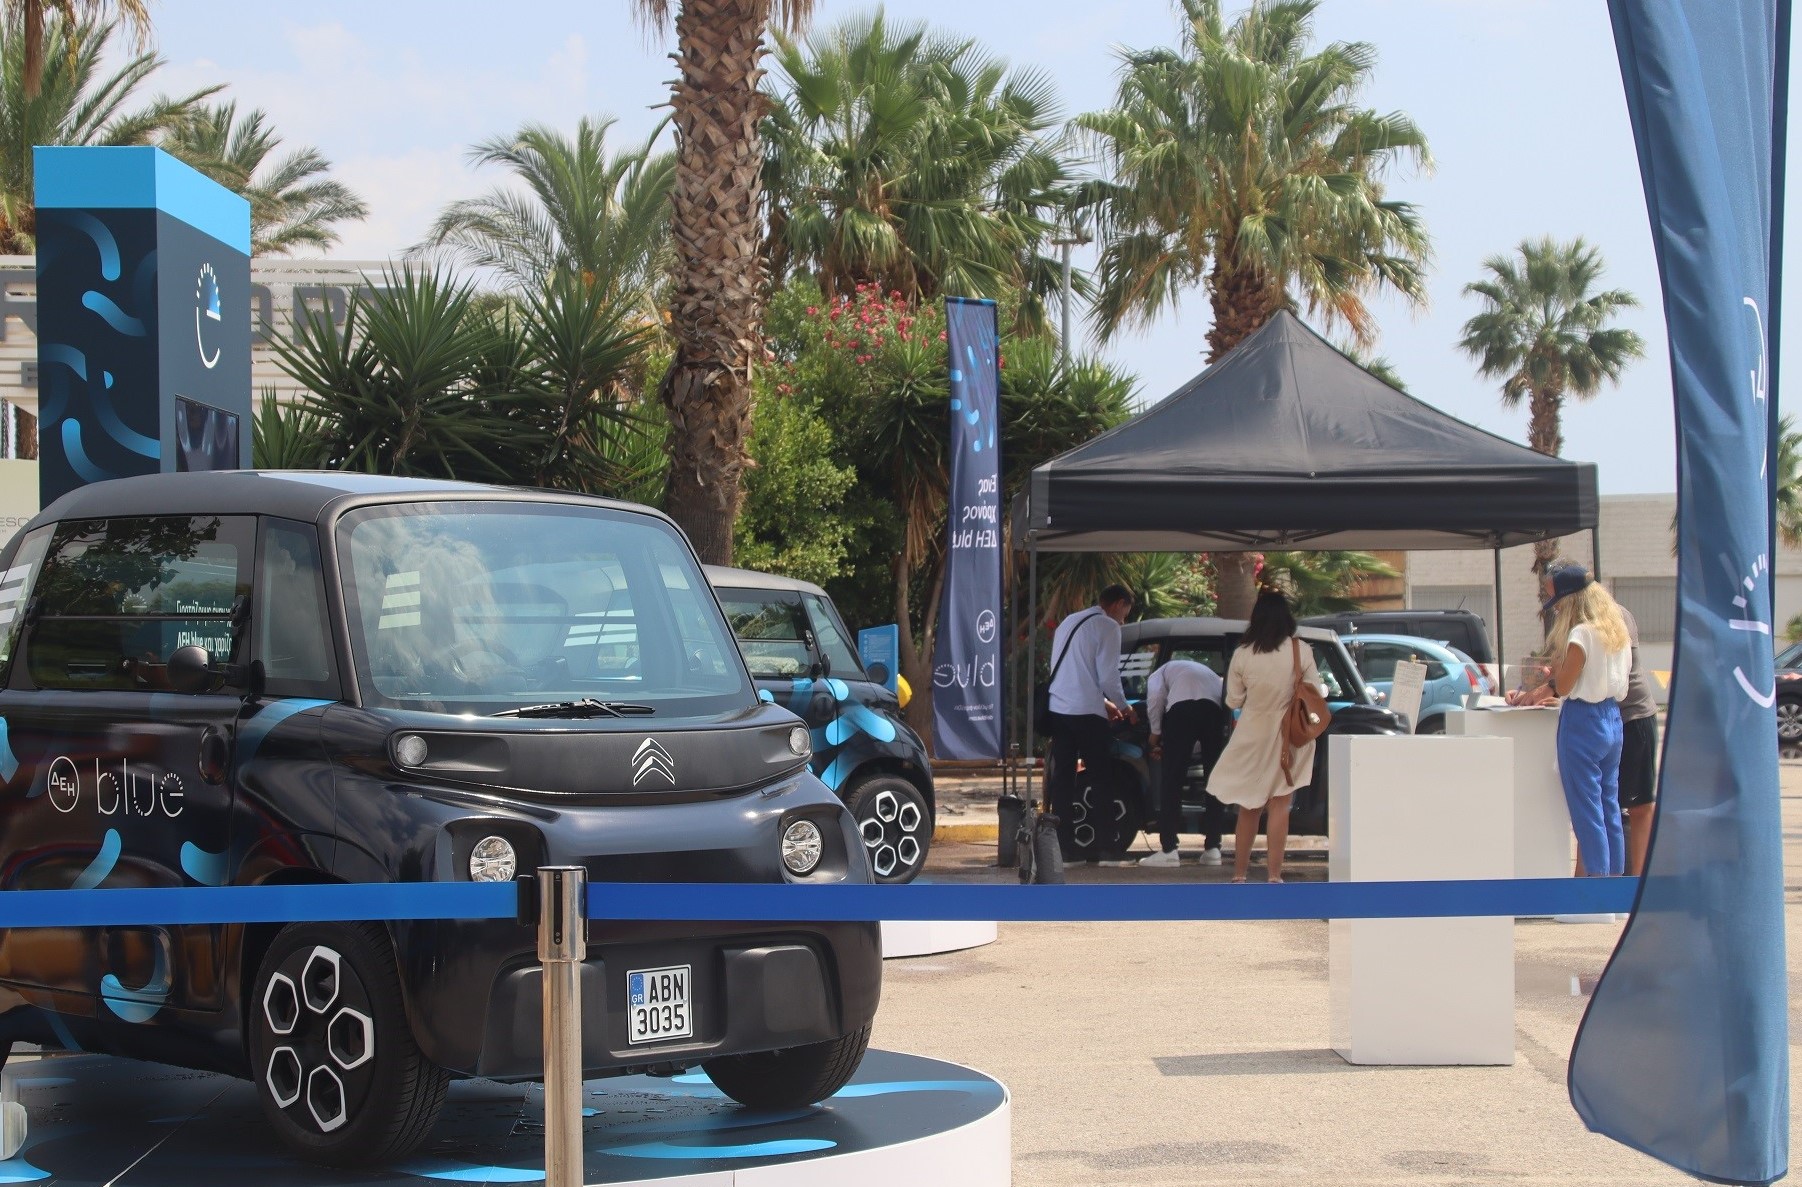 ΔΕΗ blue: Γιορτάζουμε έναν χρόνο ΔΕΗ blue  και χαρίζουμε 20 ηλεκτροκίνητα Citroën Ami blue!